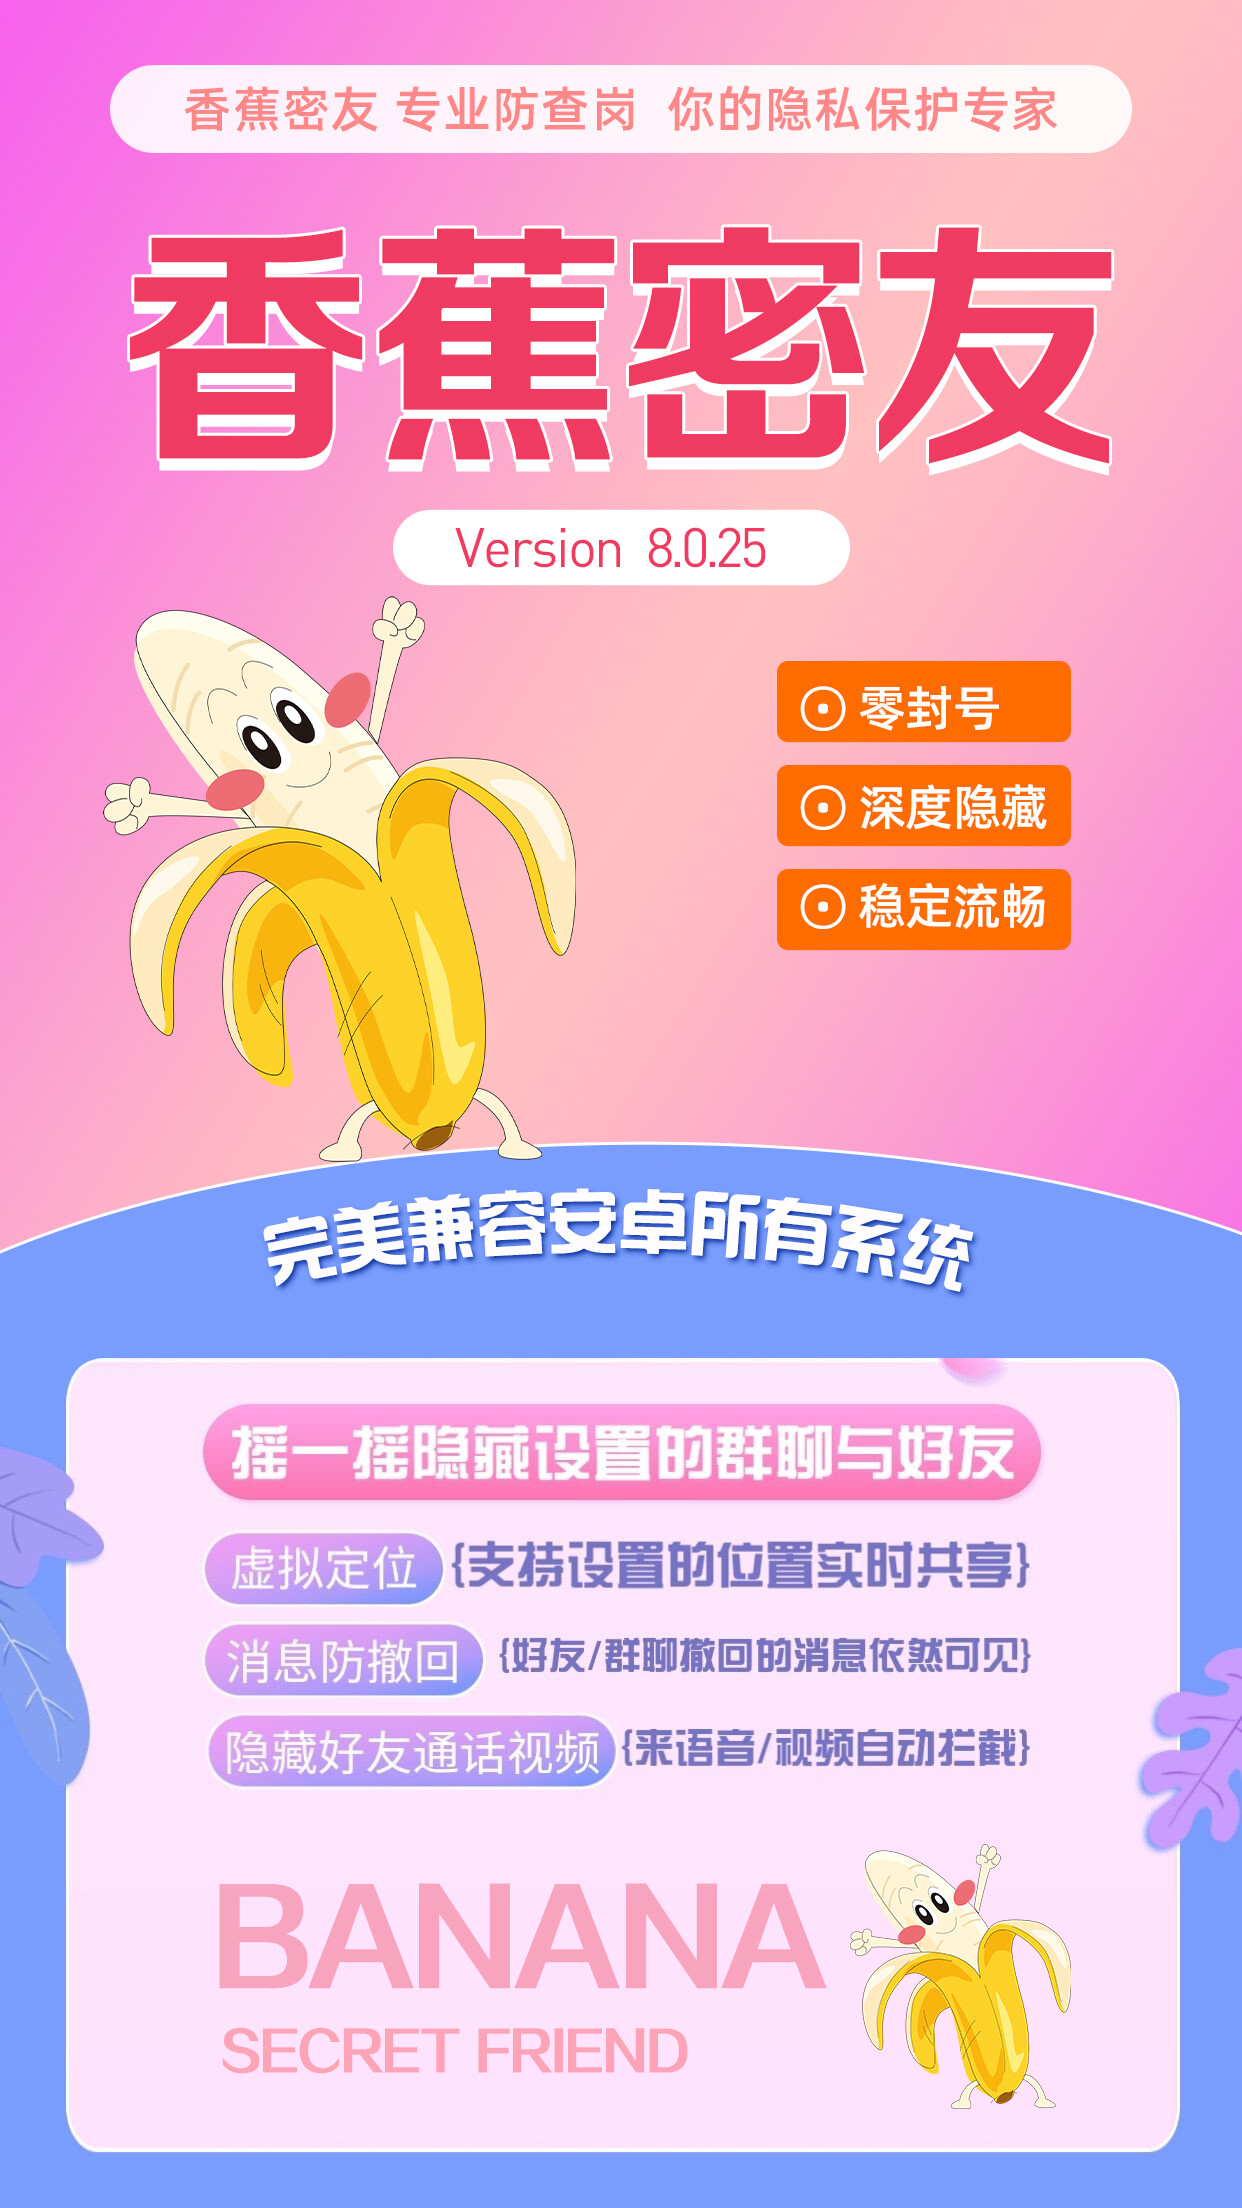 【免费体验】香蕉密友会封号吗,下载香蕉密友